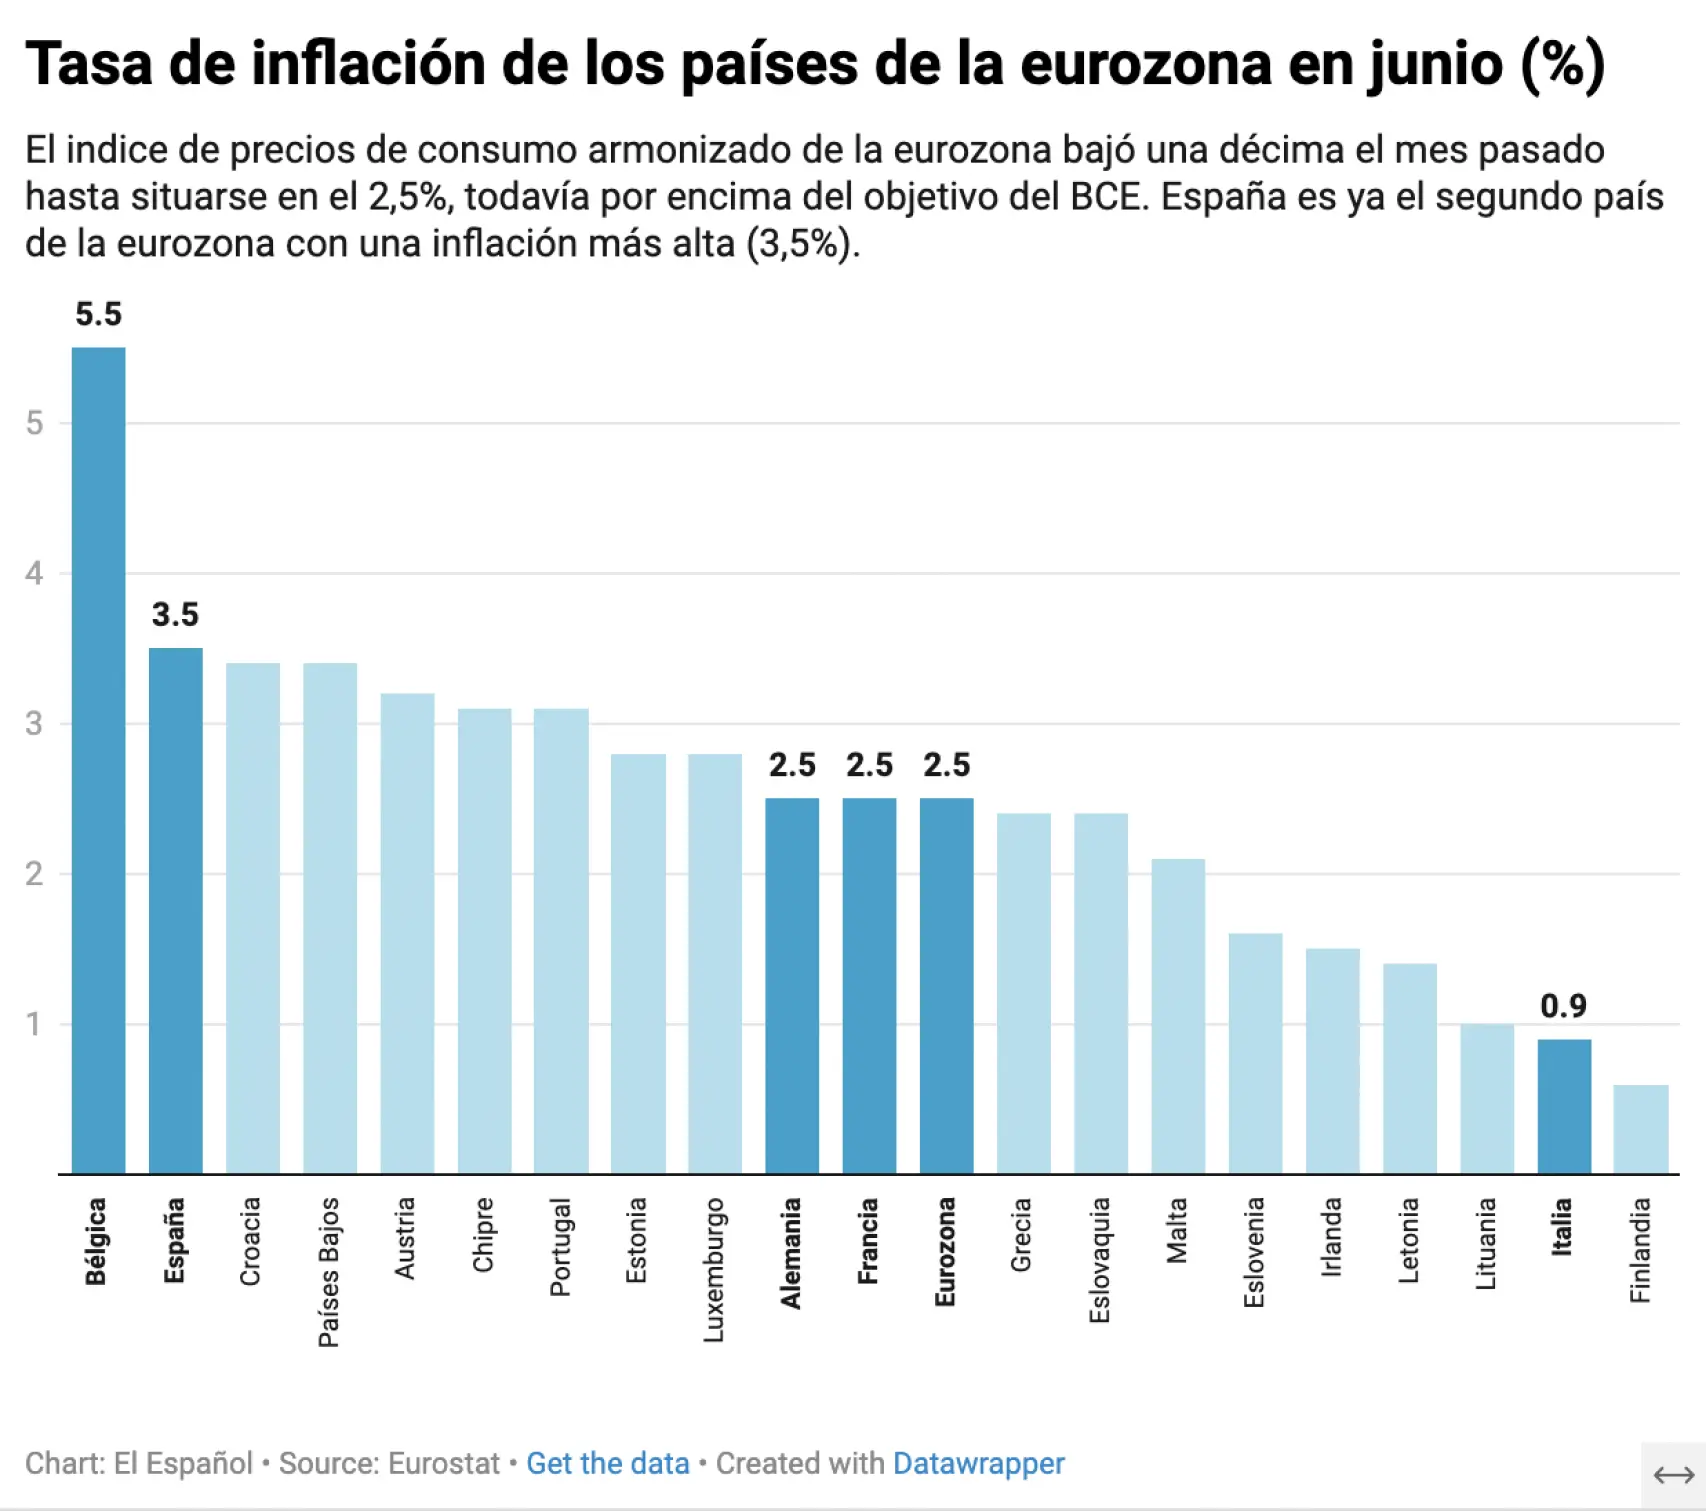 Tasa de inflación en la eurozona en junio